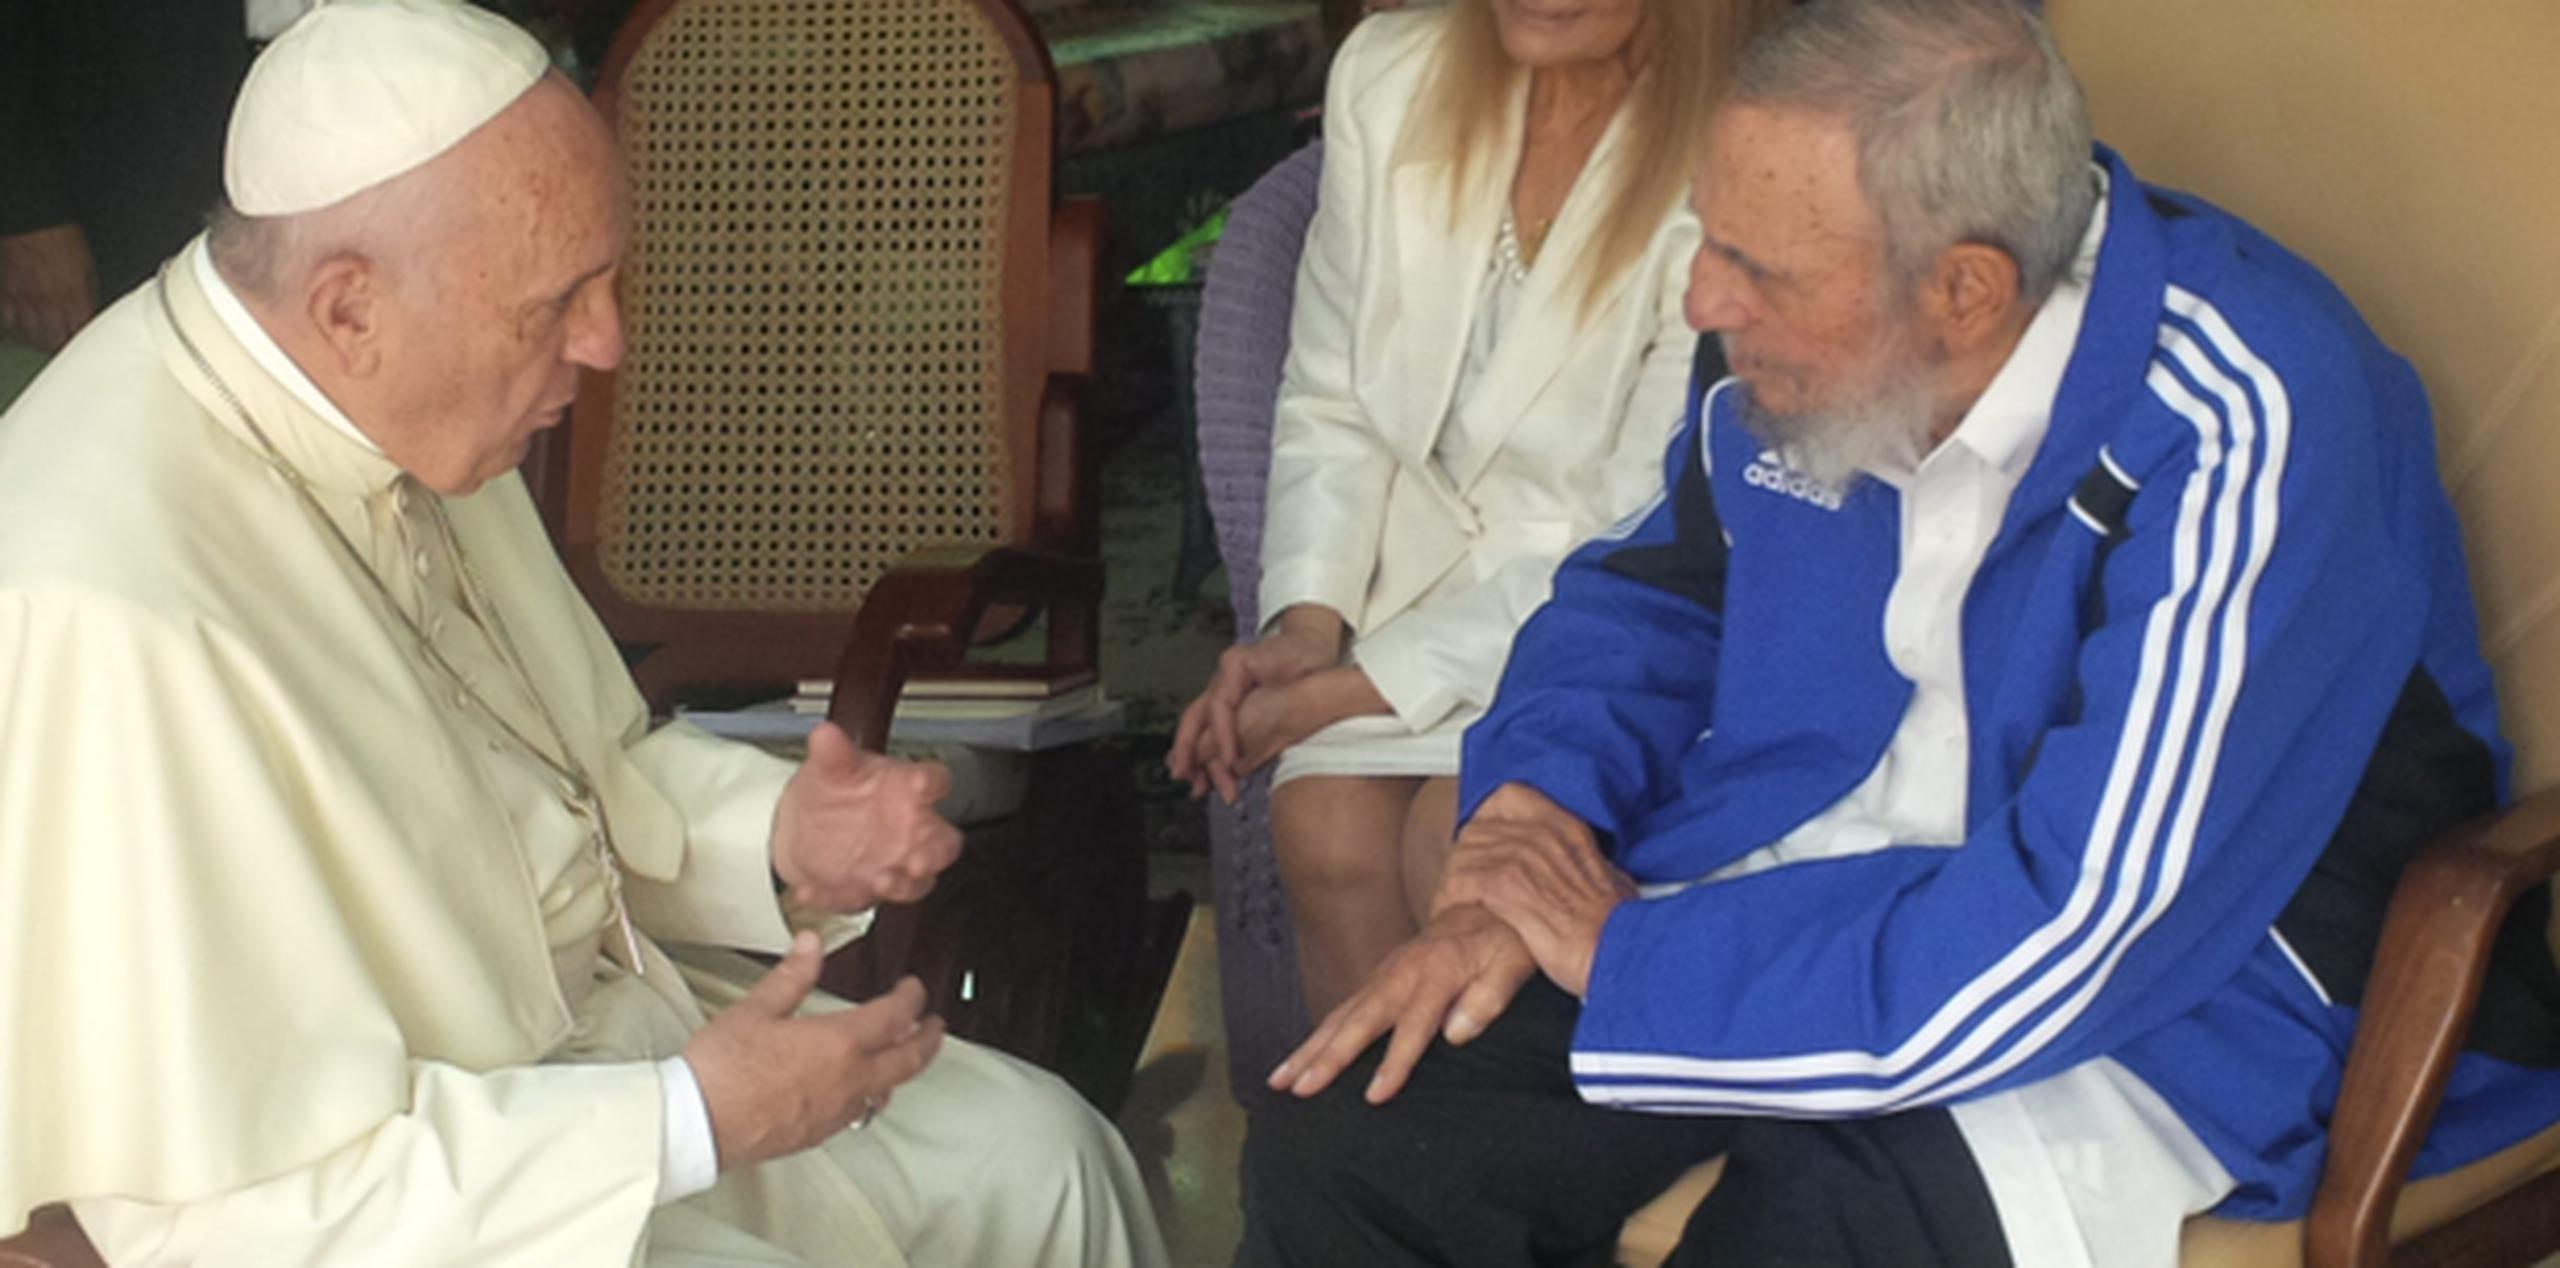 El vaticano describió el encuentro de 40 minutos con Fidel Castro en la residencia del ex presidente como "informal y familiar". (EFE)